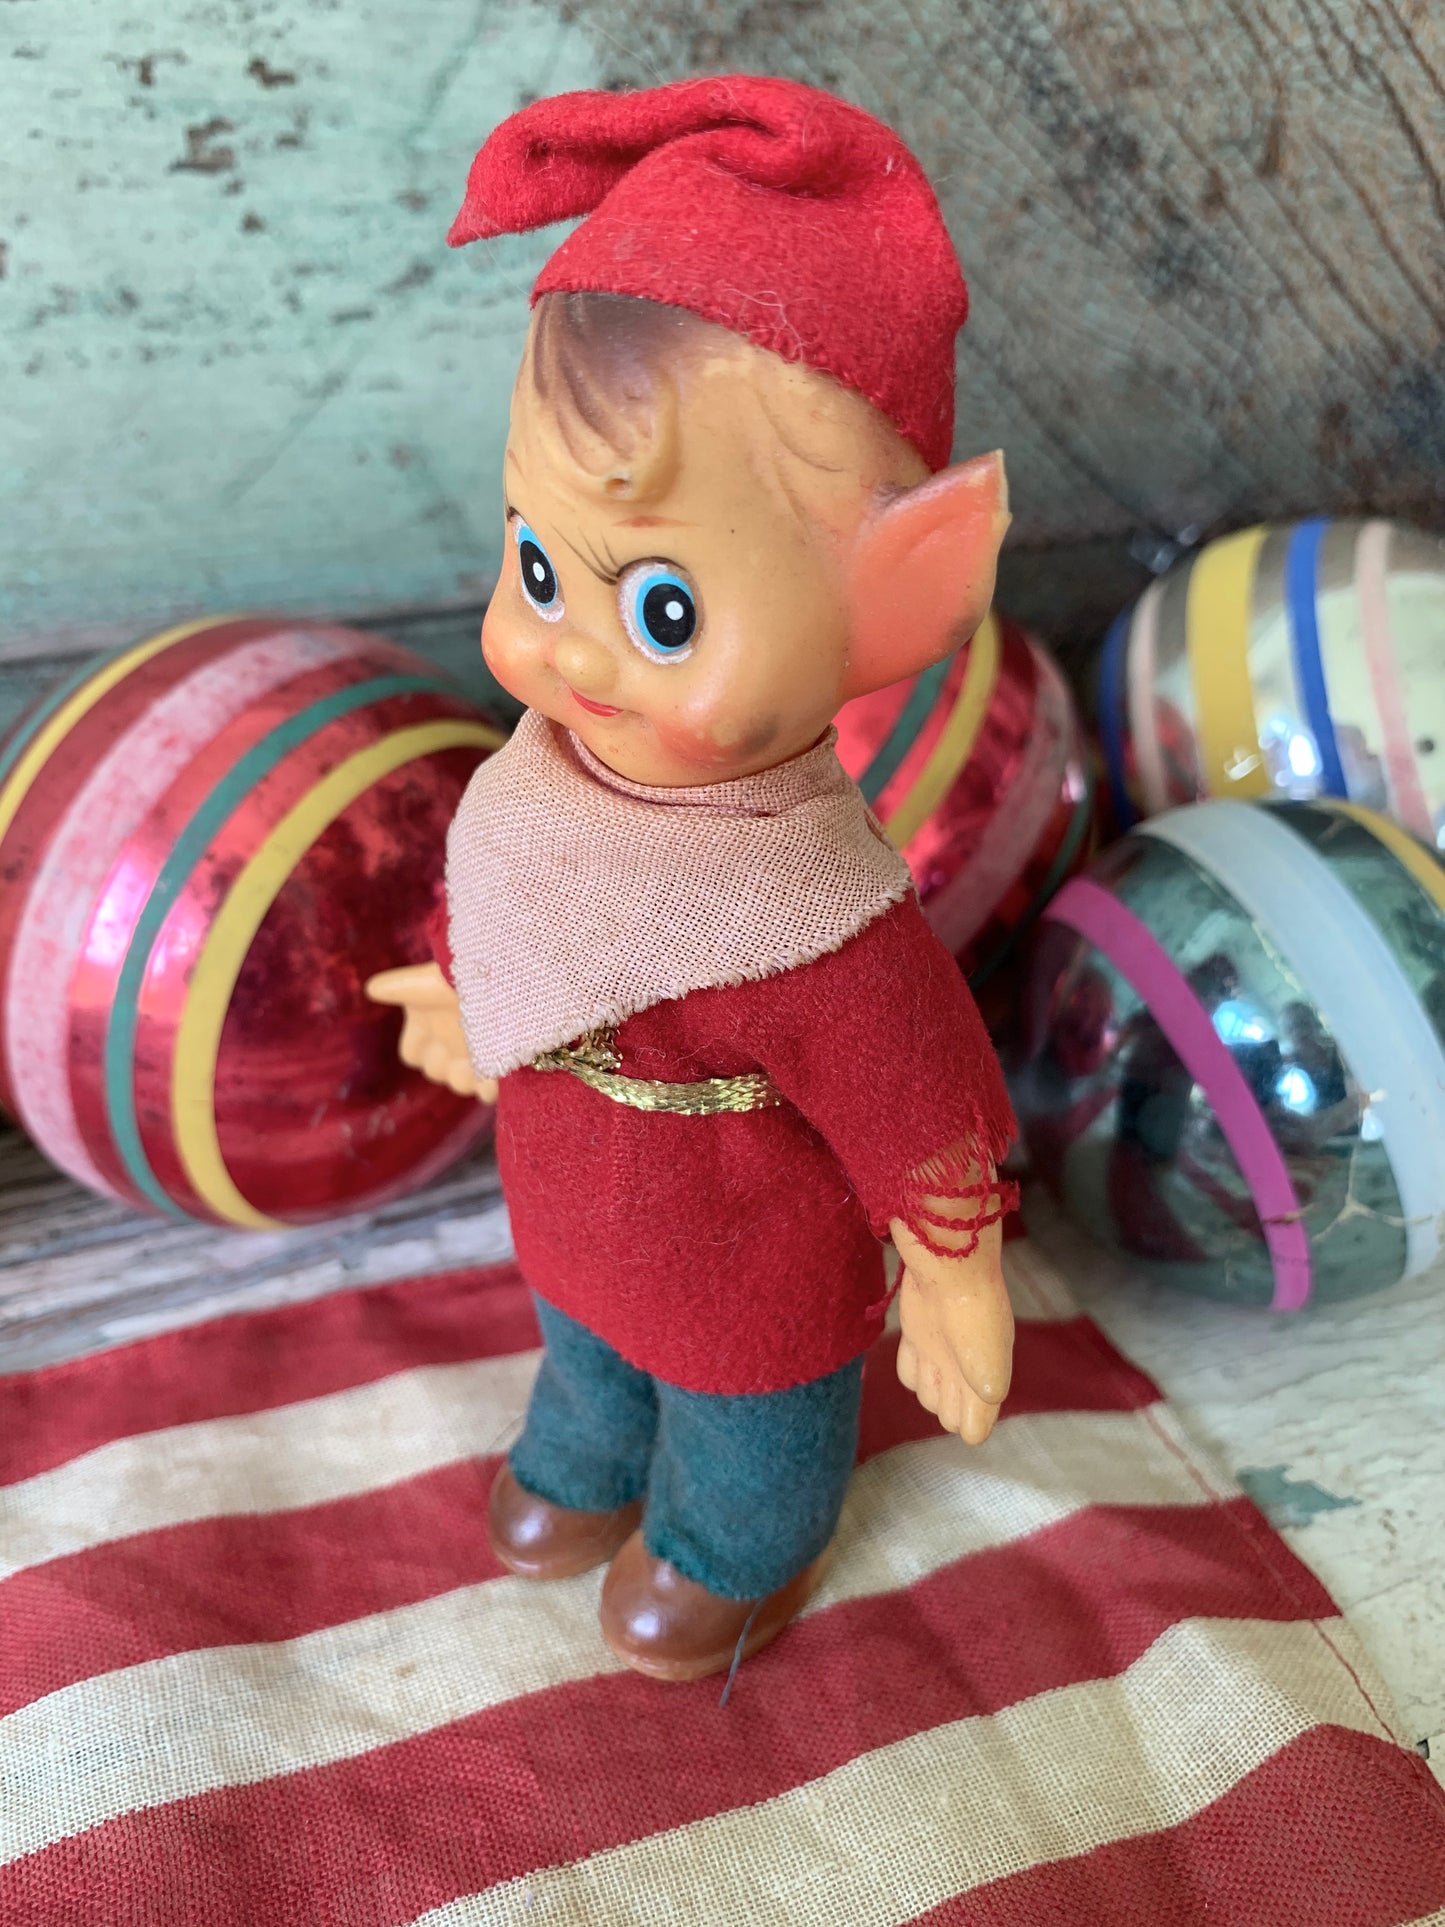 Vintage mini elf figurine Christmas decoration pixie doll